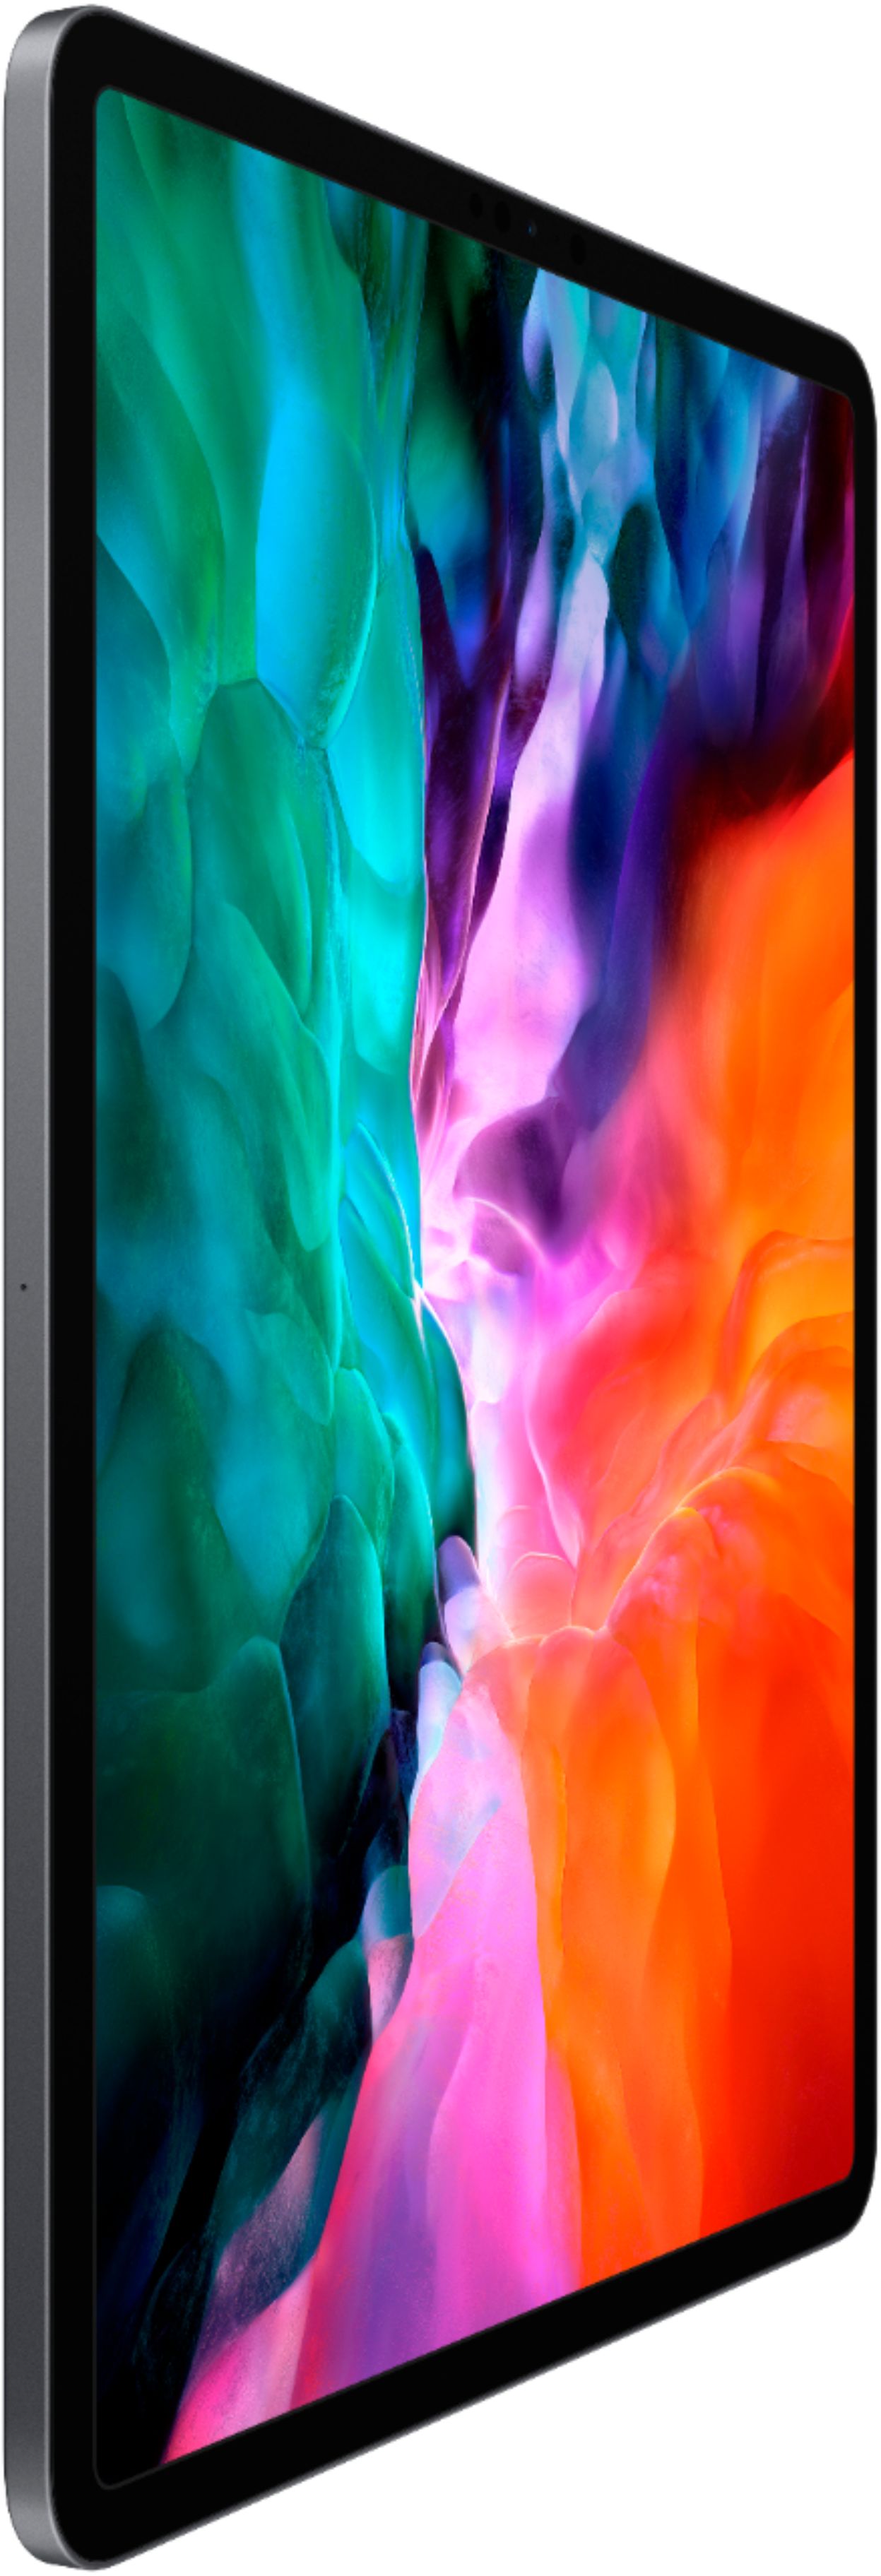 2020 Apple iPad Pro (12.9-inch, Wi-Fi, 128GB) - Space Gray (Renewed)